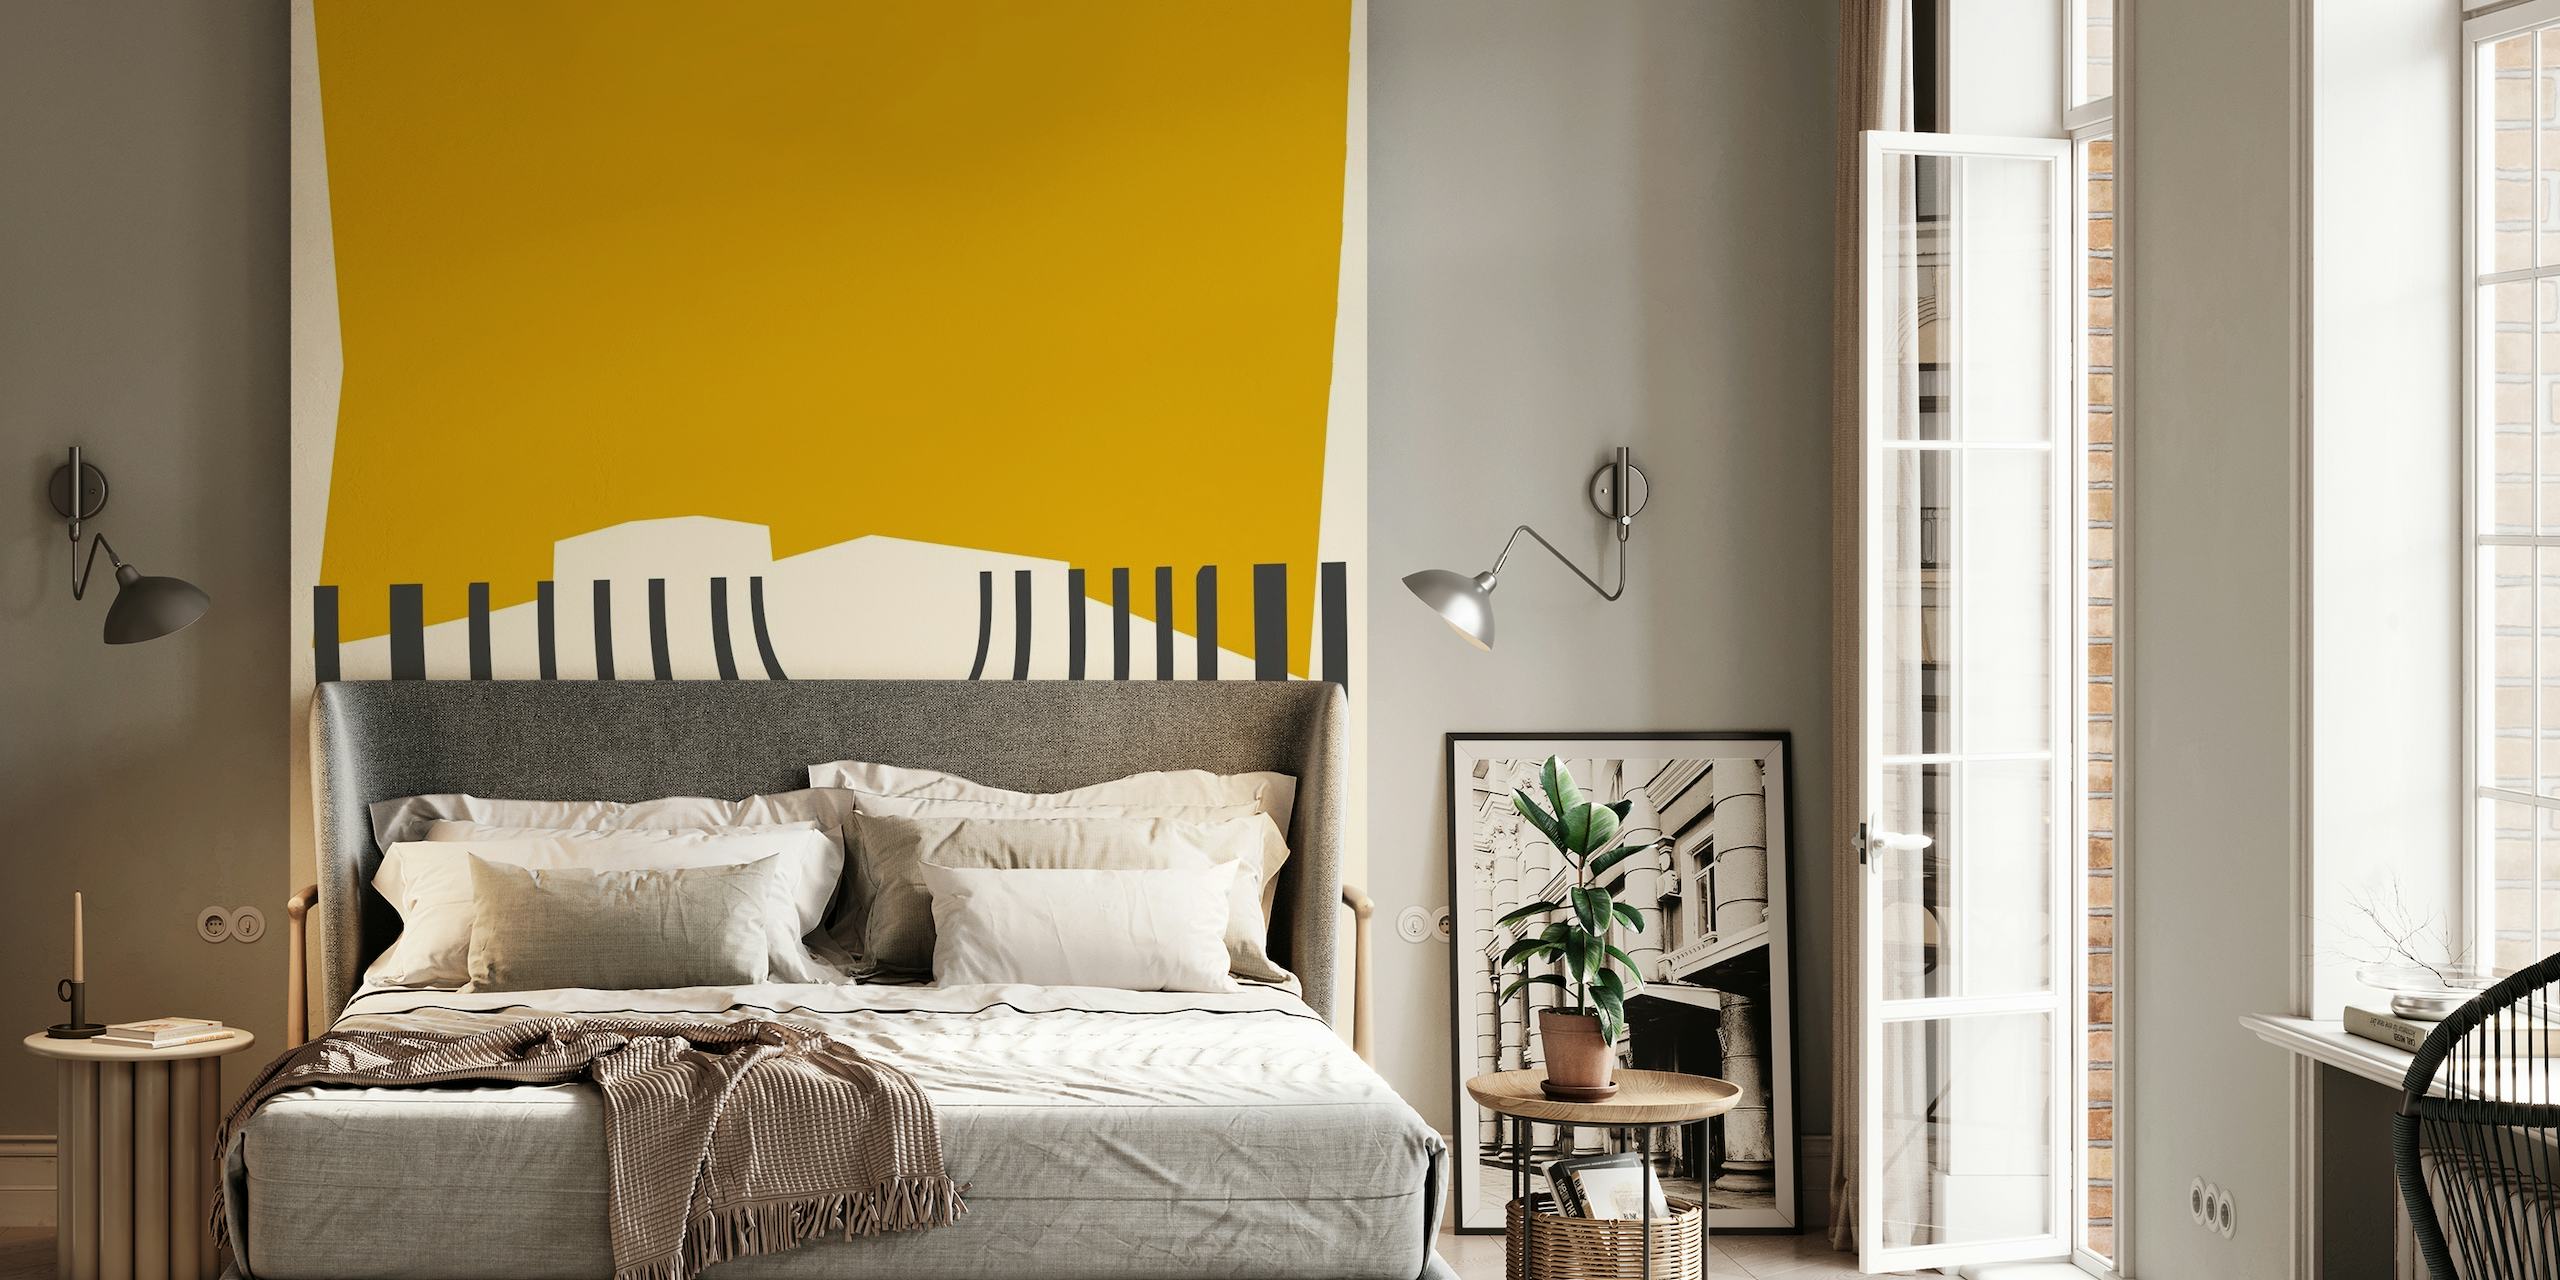 Mural de parede modernista inspirado no vintage com formas geométricas abstratas e detalhes em amarelo mostarda